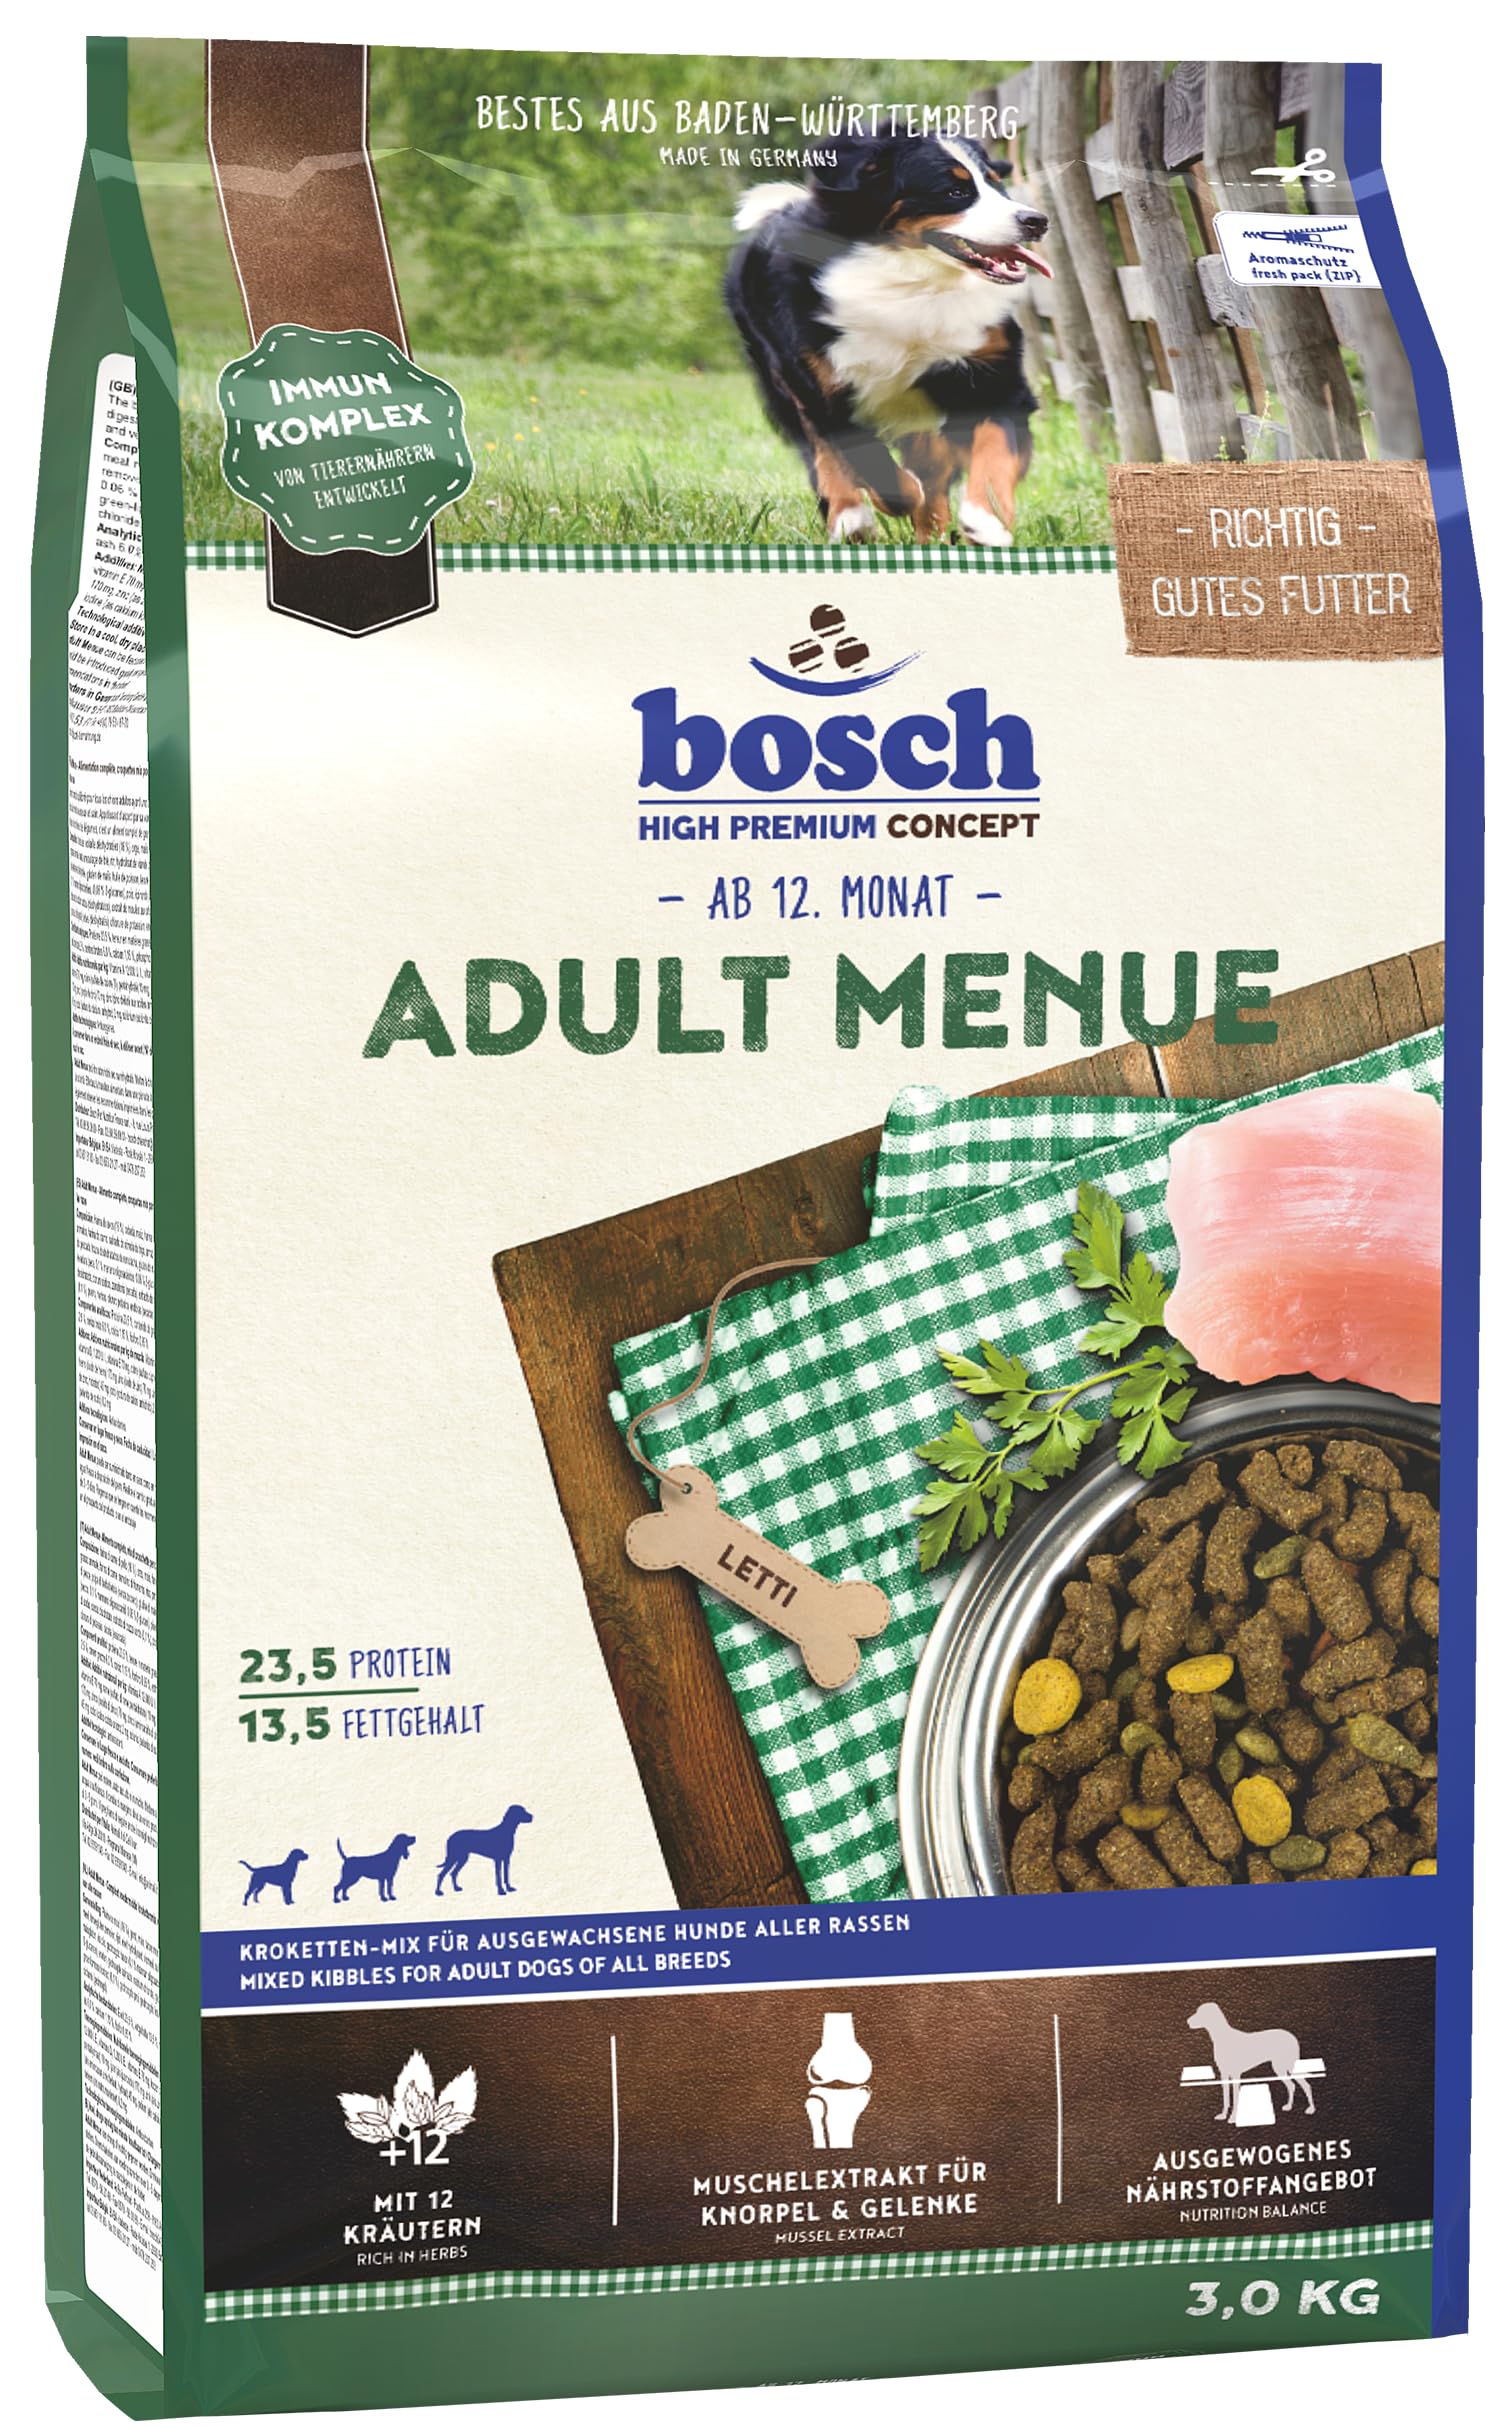 bosch HPC Adult Menue | Kroketten-Mix für ausgewachsene Hunde aller Rassen | 1 x 15 kg